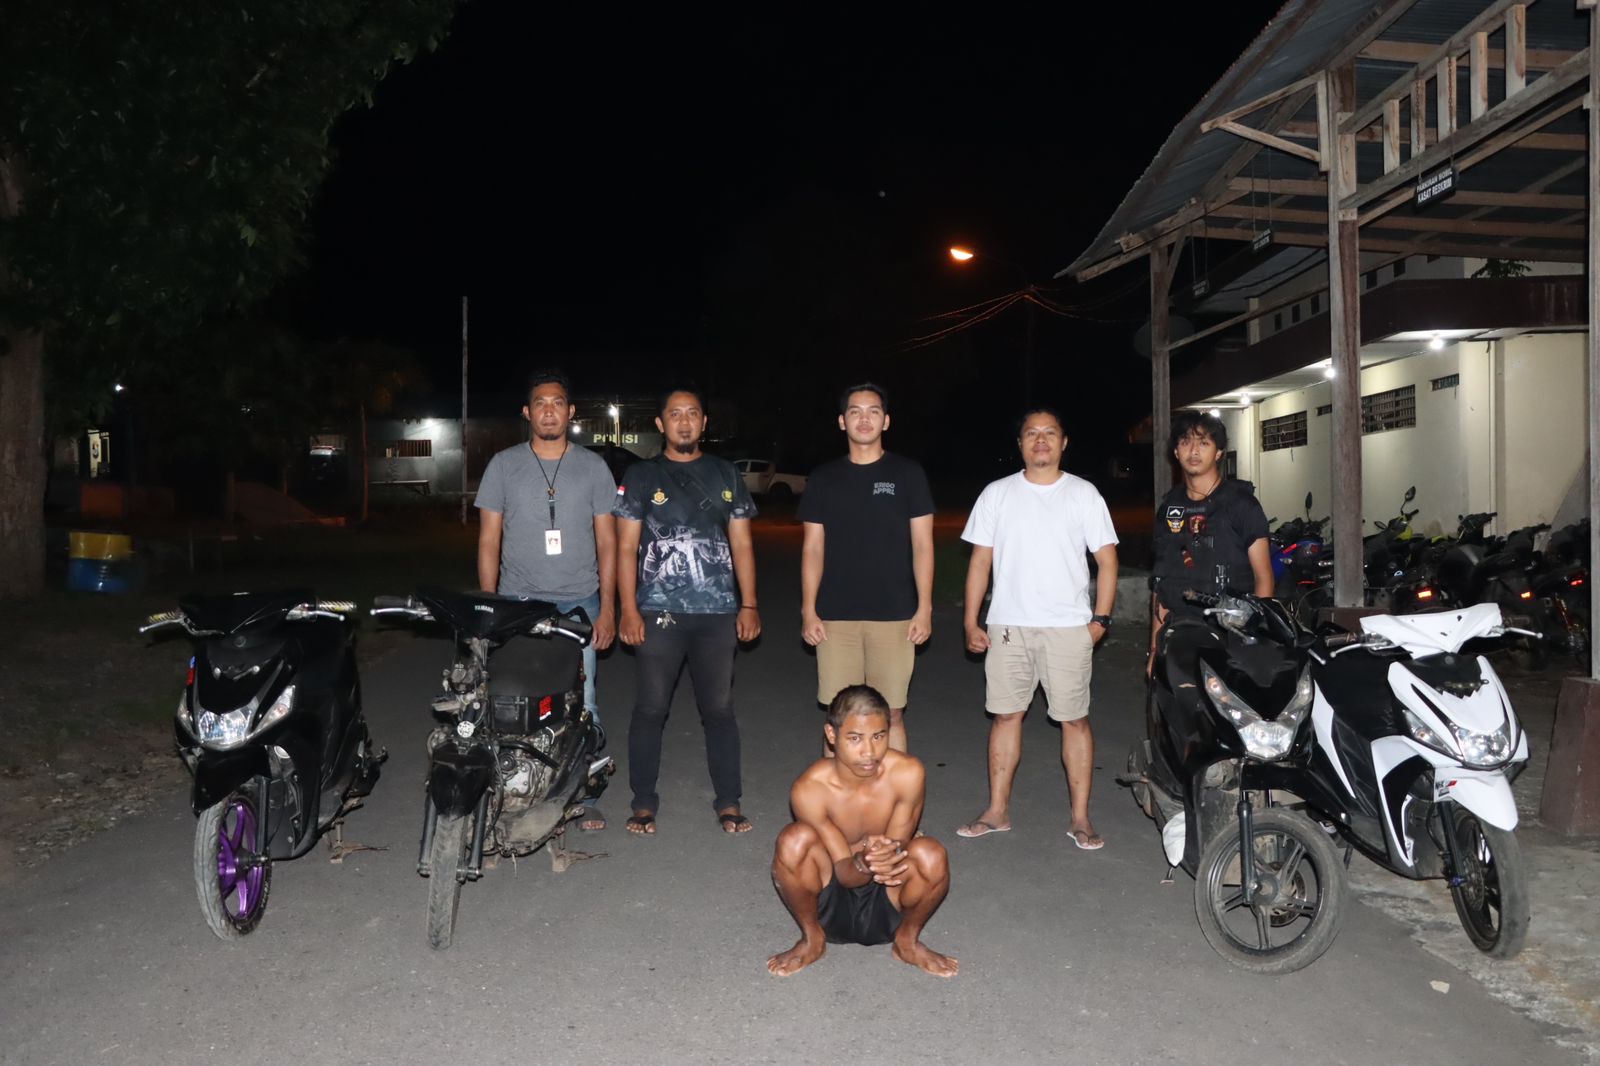 Tim Resmob Polres Halmahera Utara saat menangkap pelaku Curanmor di Kota Tobelo.(Istimewa).